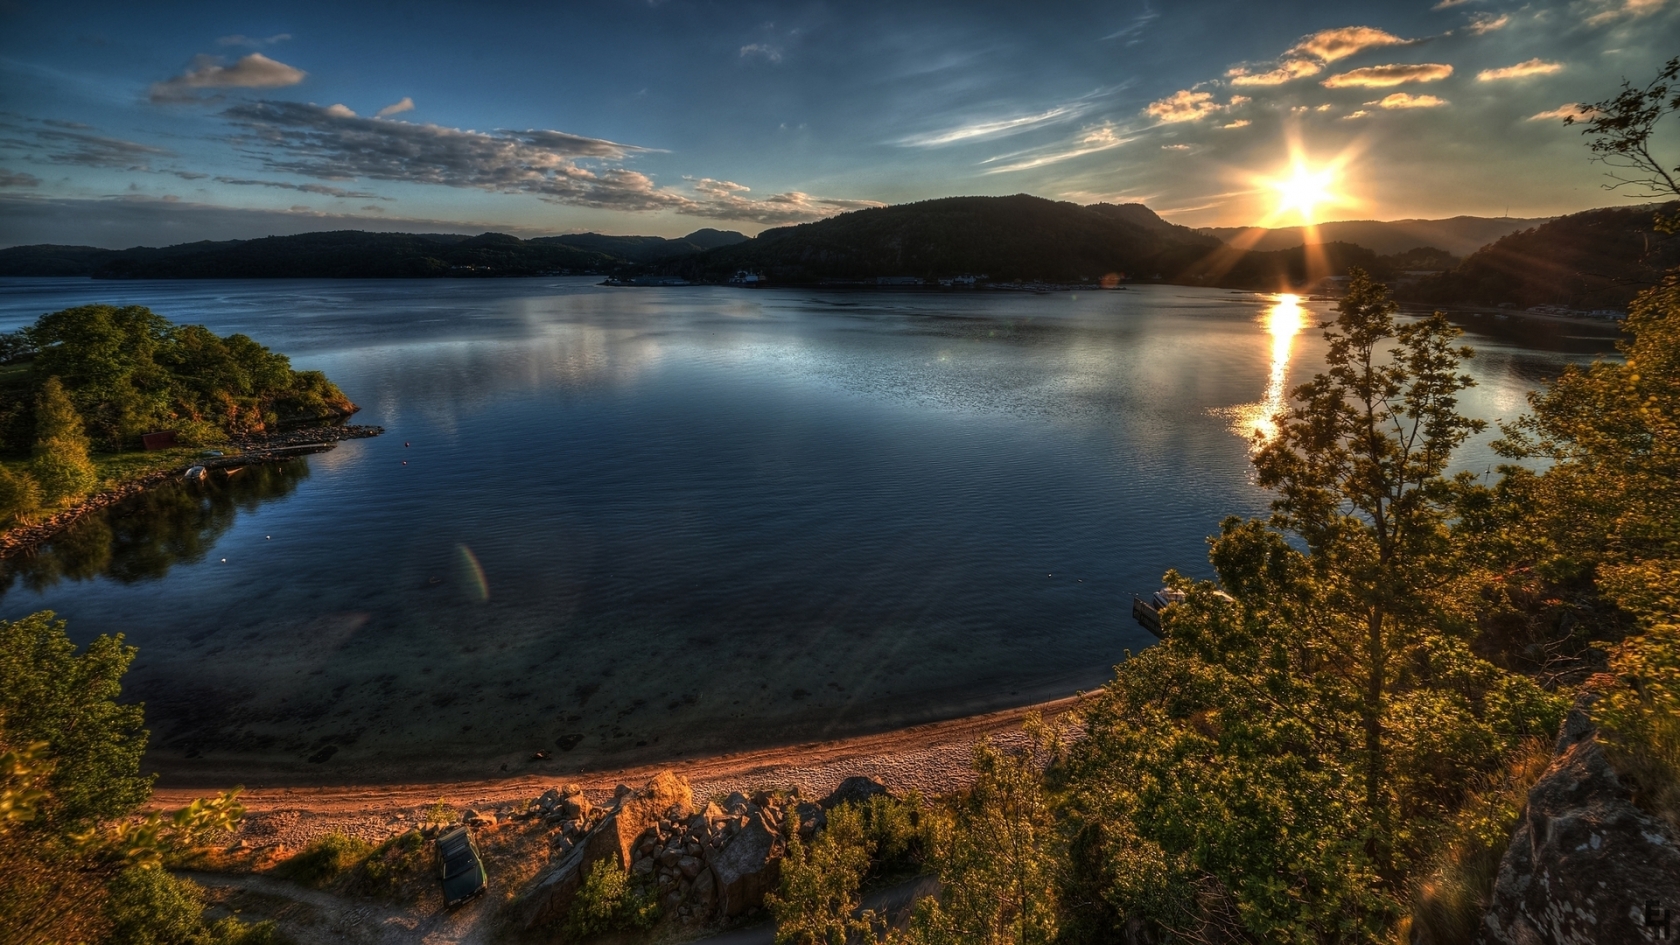 Stunning Lake Sunset for 1680 x 945 HDTV resolution